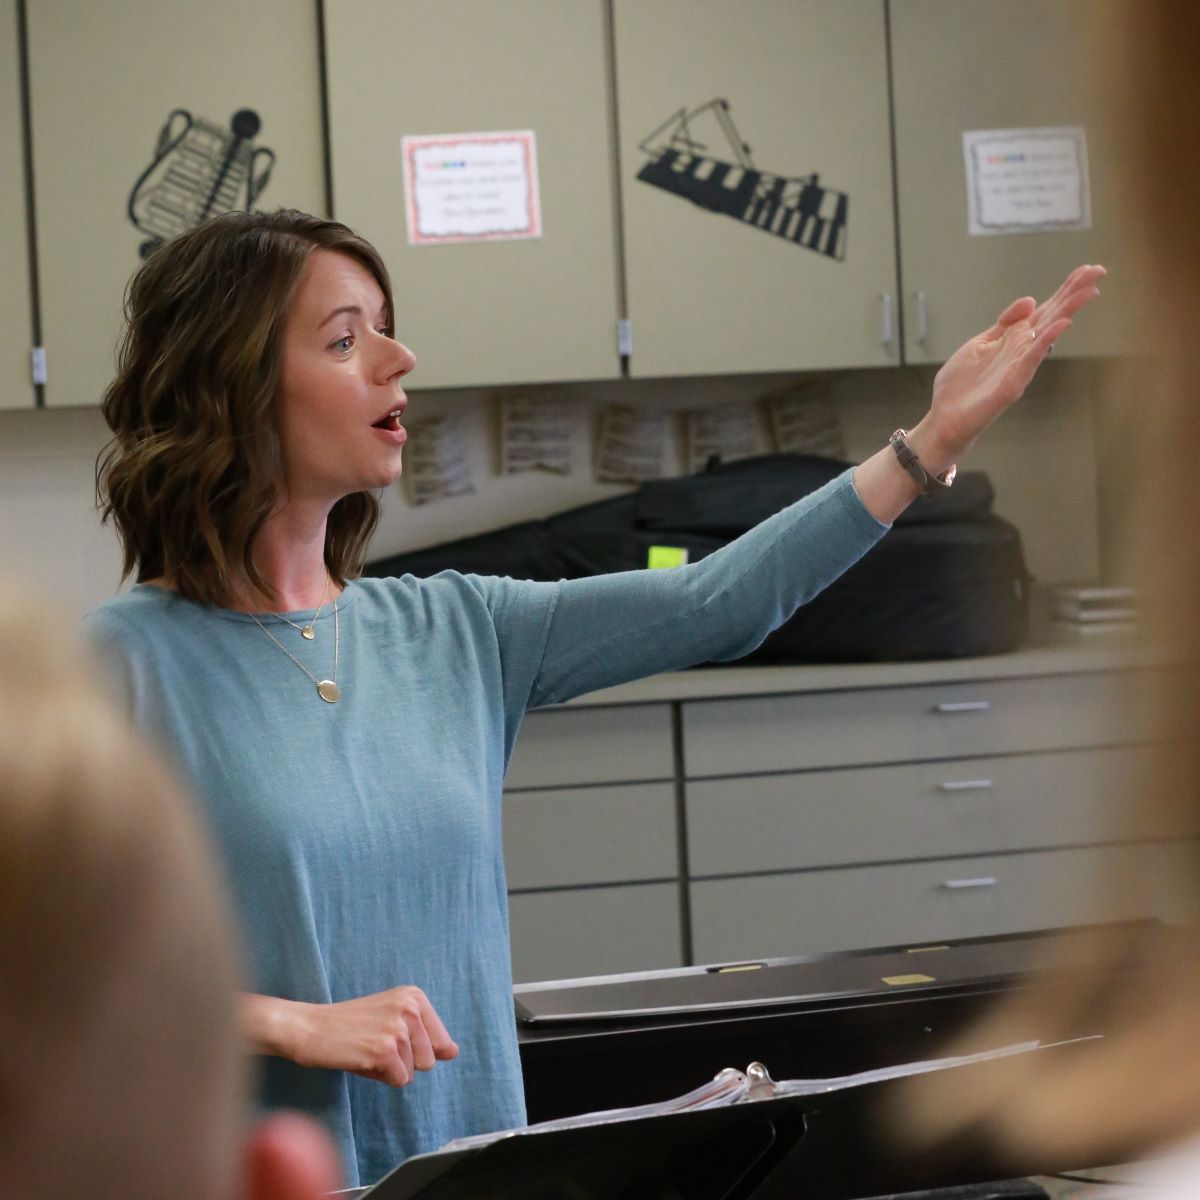 A music teacher in a blue shirt gestures to the class